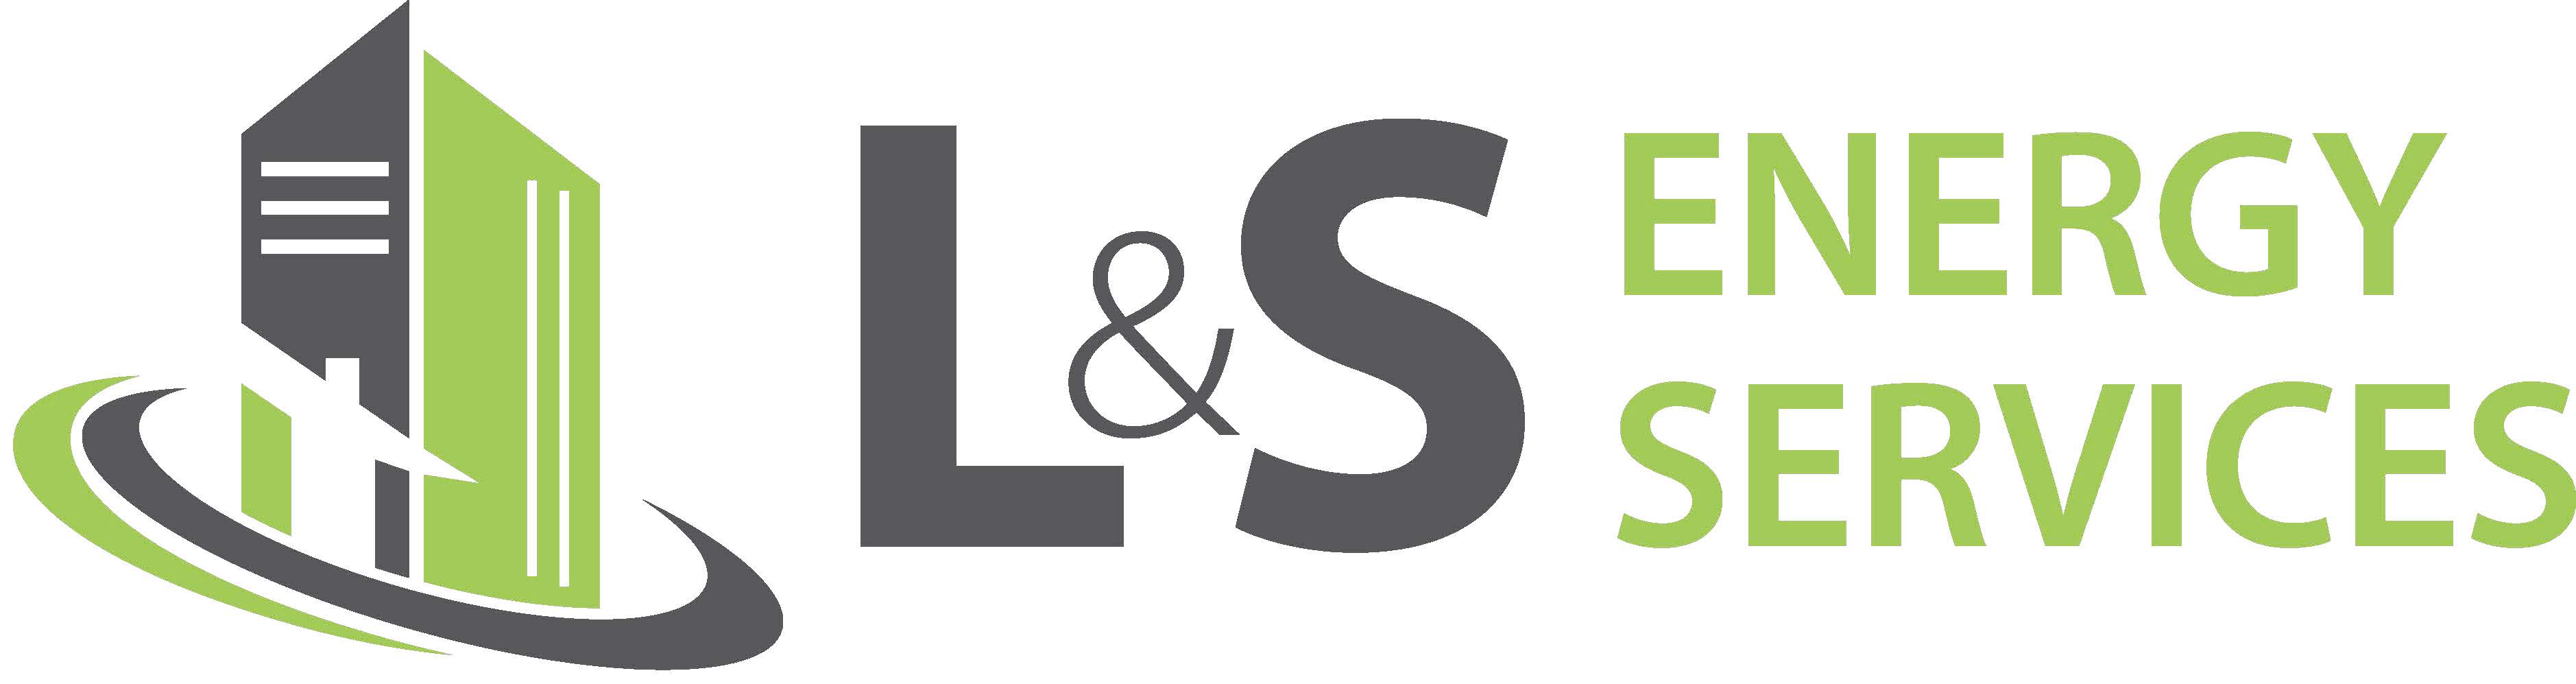 L&S Logo